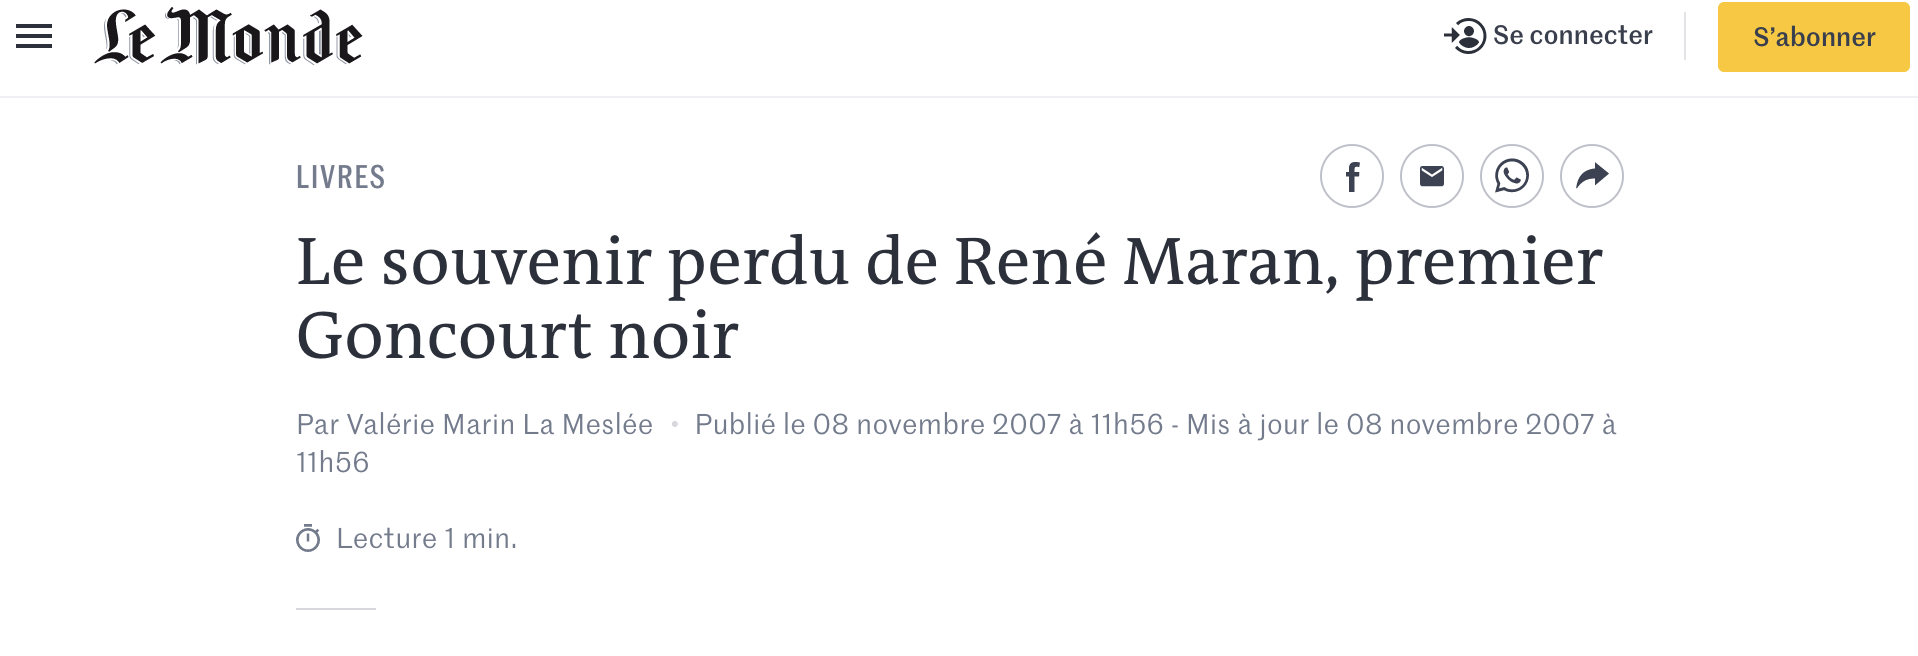 Le souvenir perdu de René Maran premier Goncourt noir